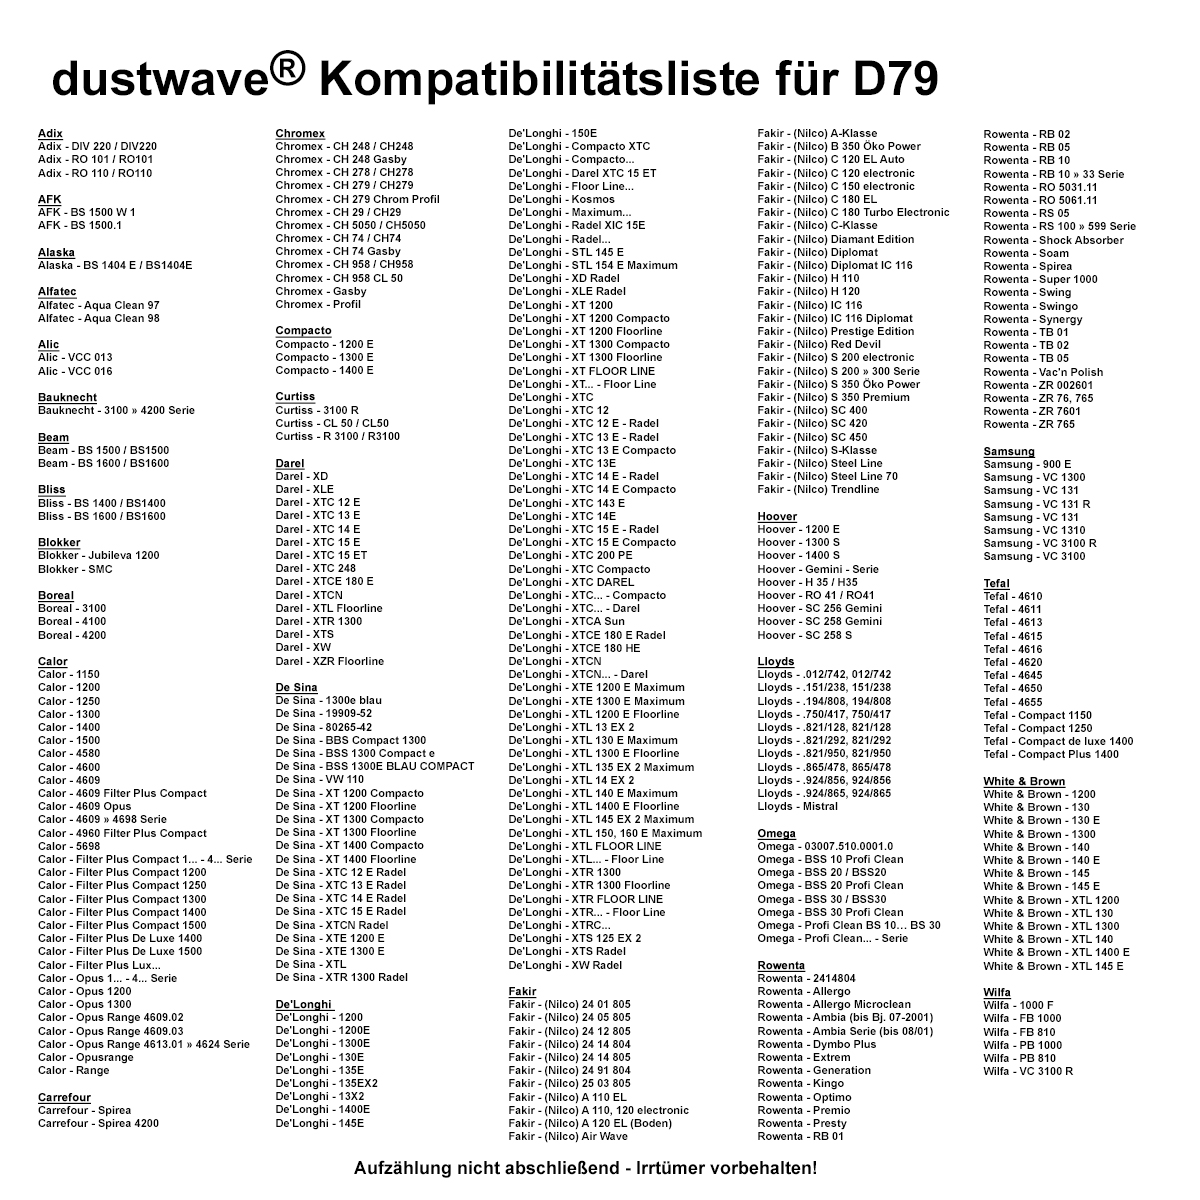 Dustwave® 10 Staubsaugerbeutel für Hoover AQUA JET - hocheffizient, mehrlagiges Mikrovlies mit Hygieneverschluss - Made in Germany